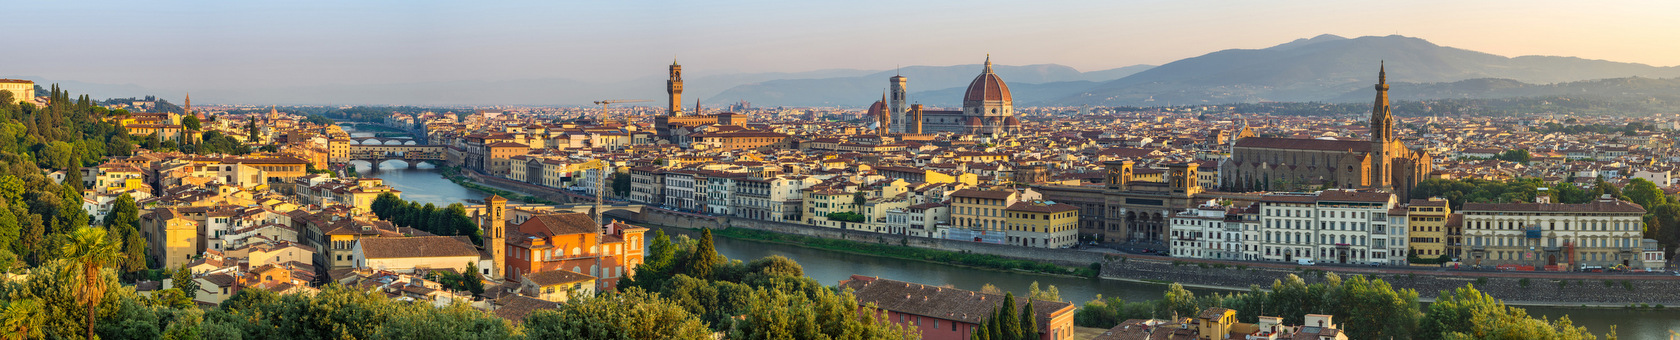 Florencja (Włochy) niesamowite miejsce na naukę języka języka włoskiego